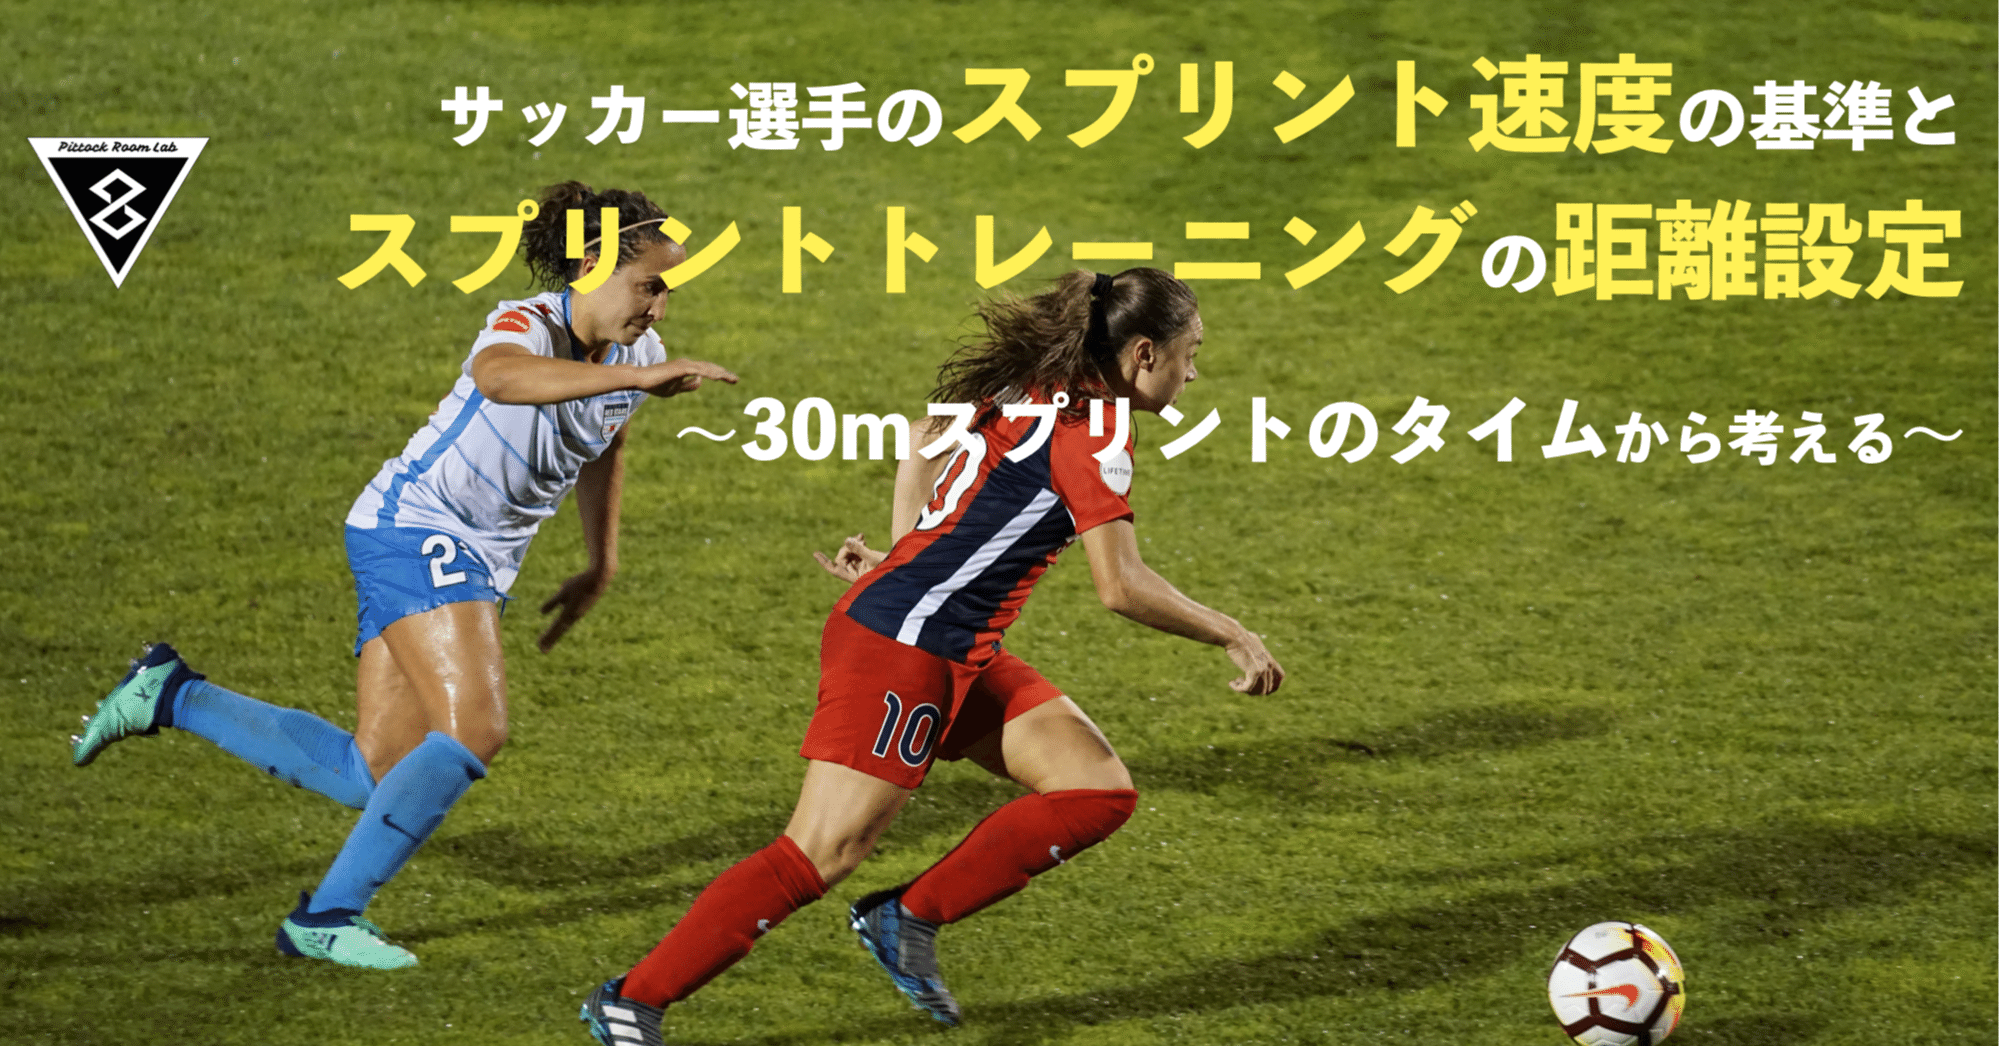 サッカー選手のスプリント速度の基準とスプリントトレーニングの設定 30mスプリントのタイムから考える Keisuke Matsumoto Note